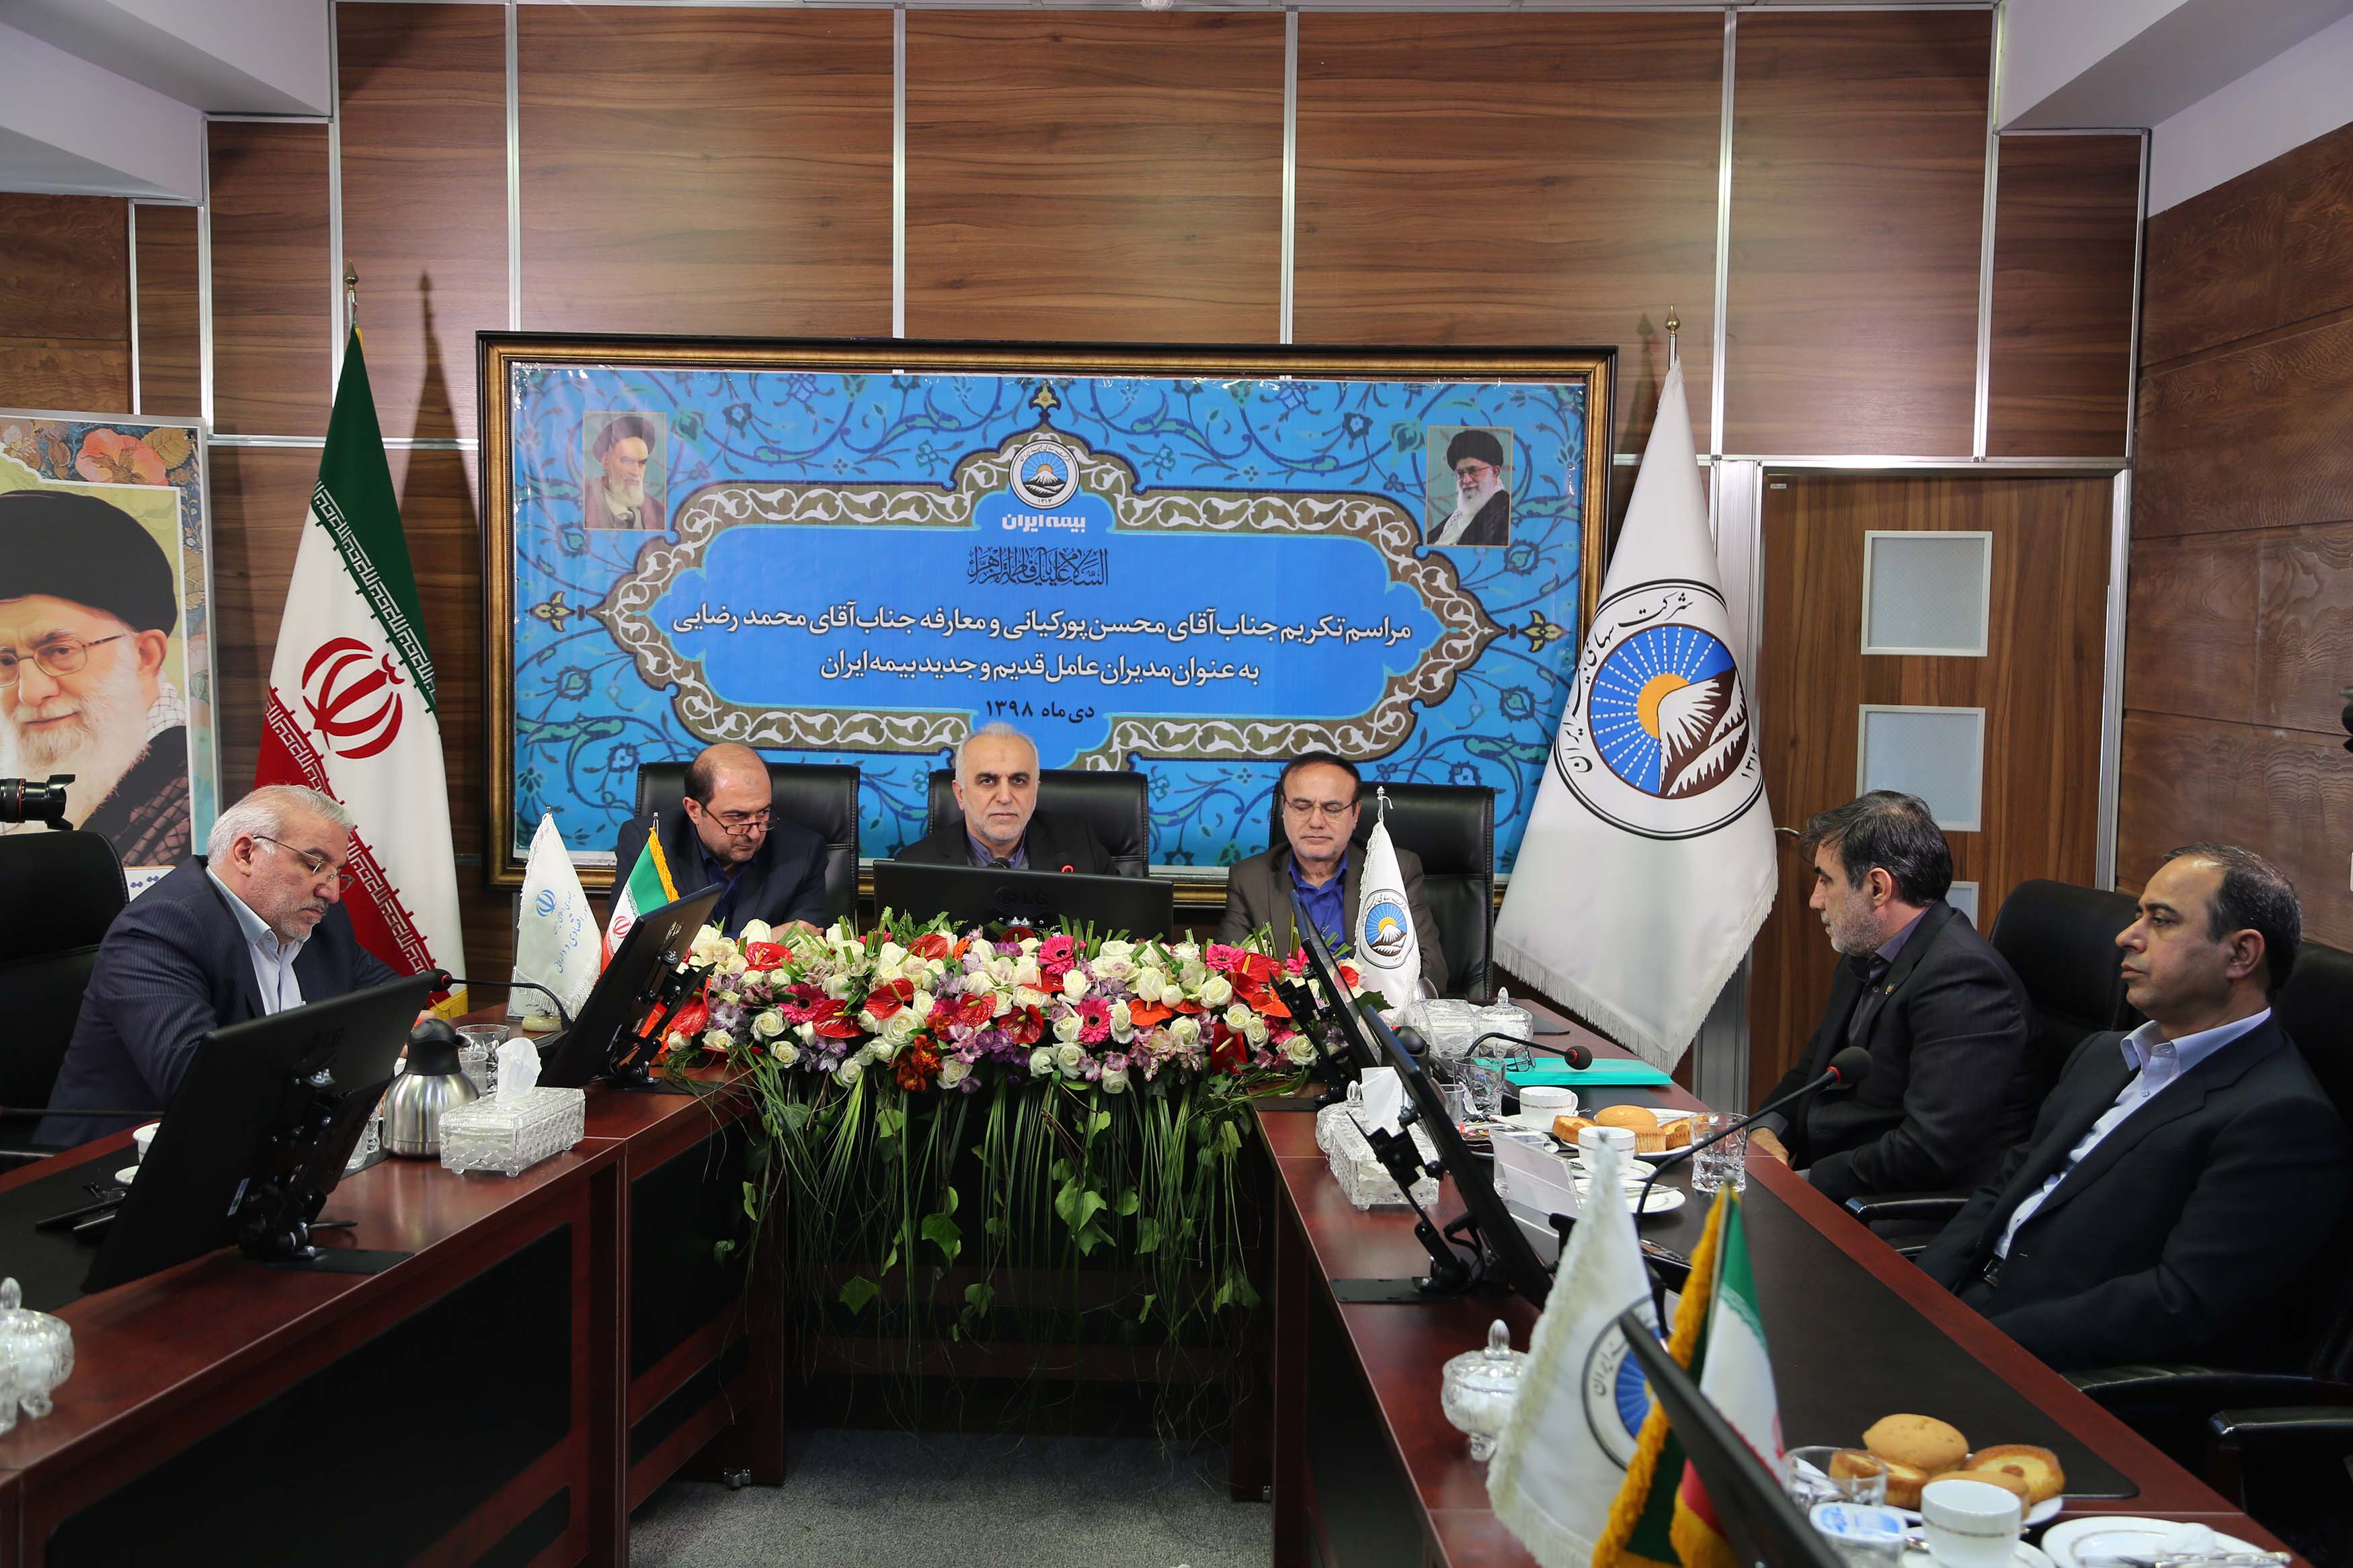 جلسه تکریم محسن پورکیانی با حضور وزیر اقتصاد